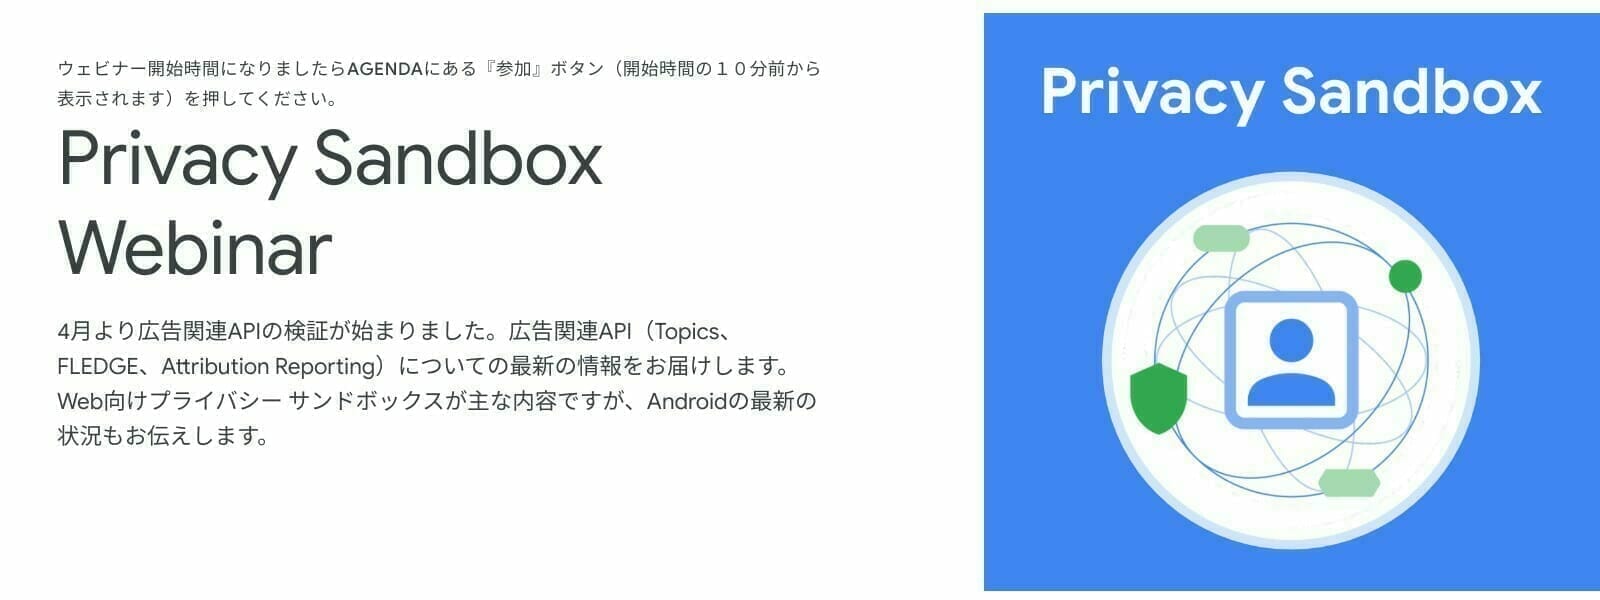 [Google] Privacy Sandbox Webinar